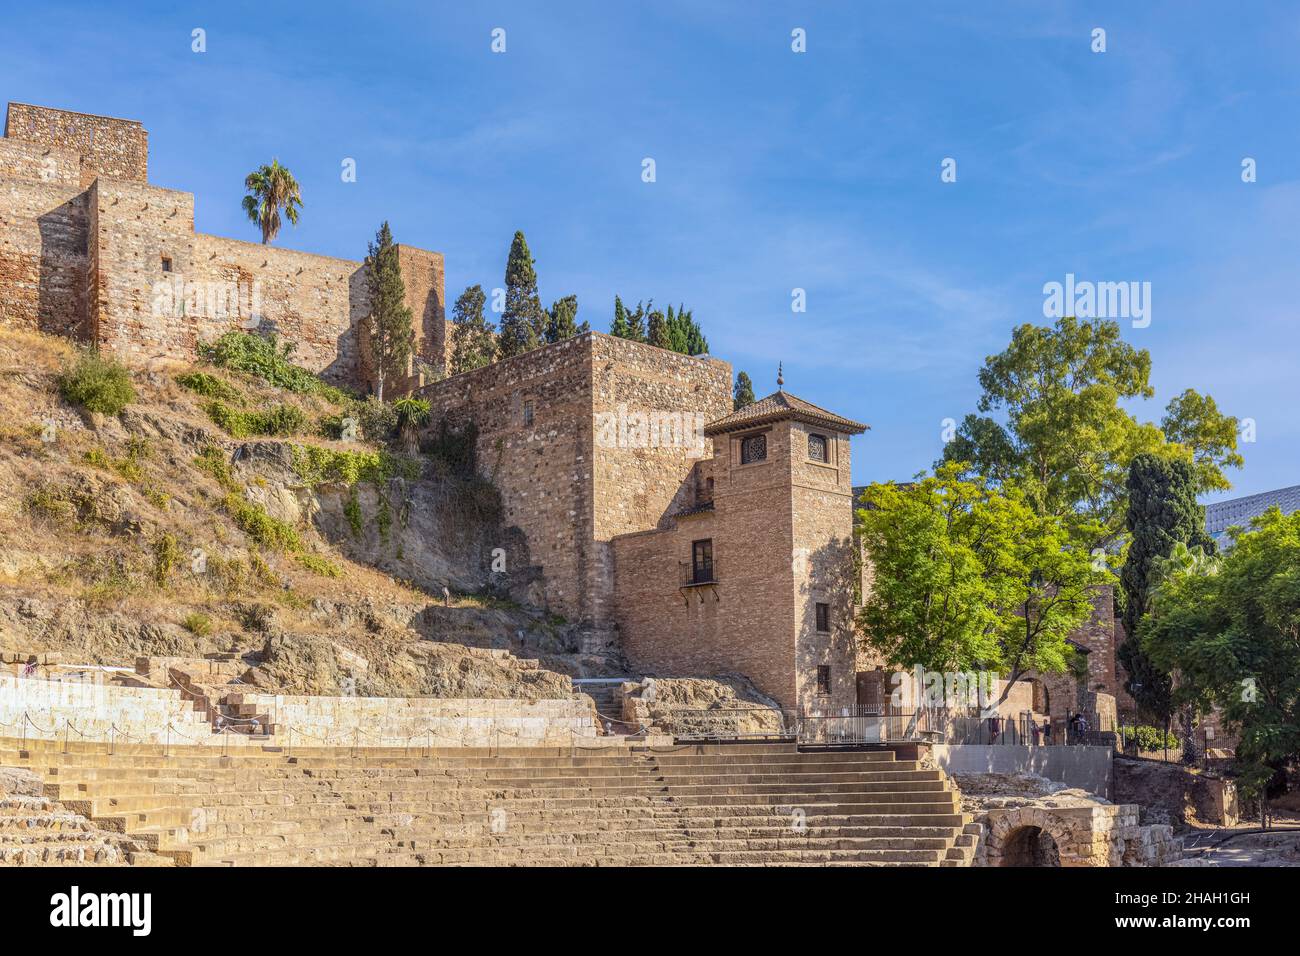 Das römische Theater unter den Mauern der maurischen Alcazaba, oder Festung, Malaga, Costa del Sol, Provinz Malaga, Andalusien, Südspanien. Die Thea Stockfoto